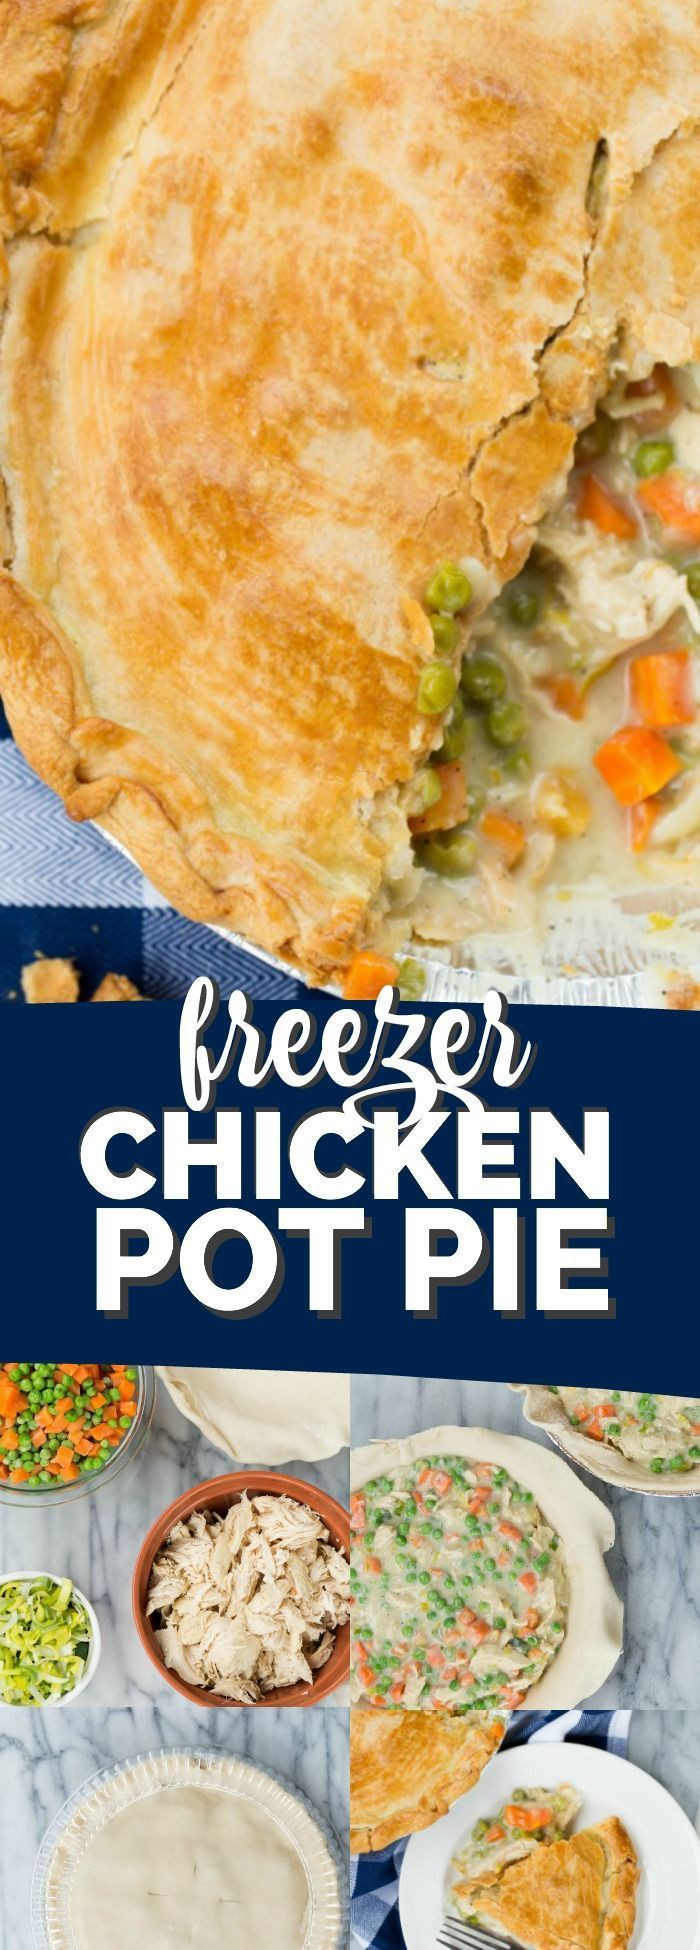 Chicken Pot Pie Freezer Meal
 Freezer Ready Chicken Pot Pie Recipe in 2019